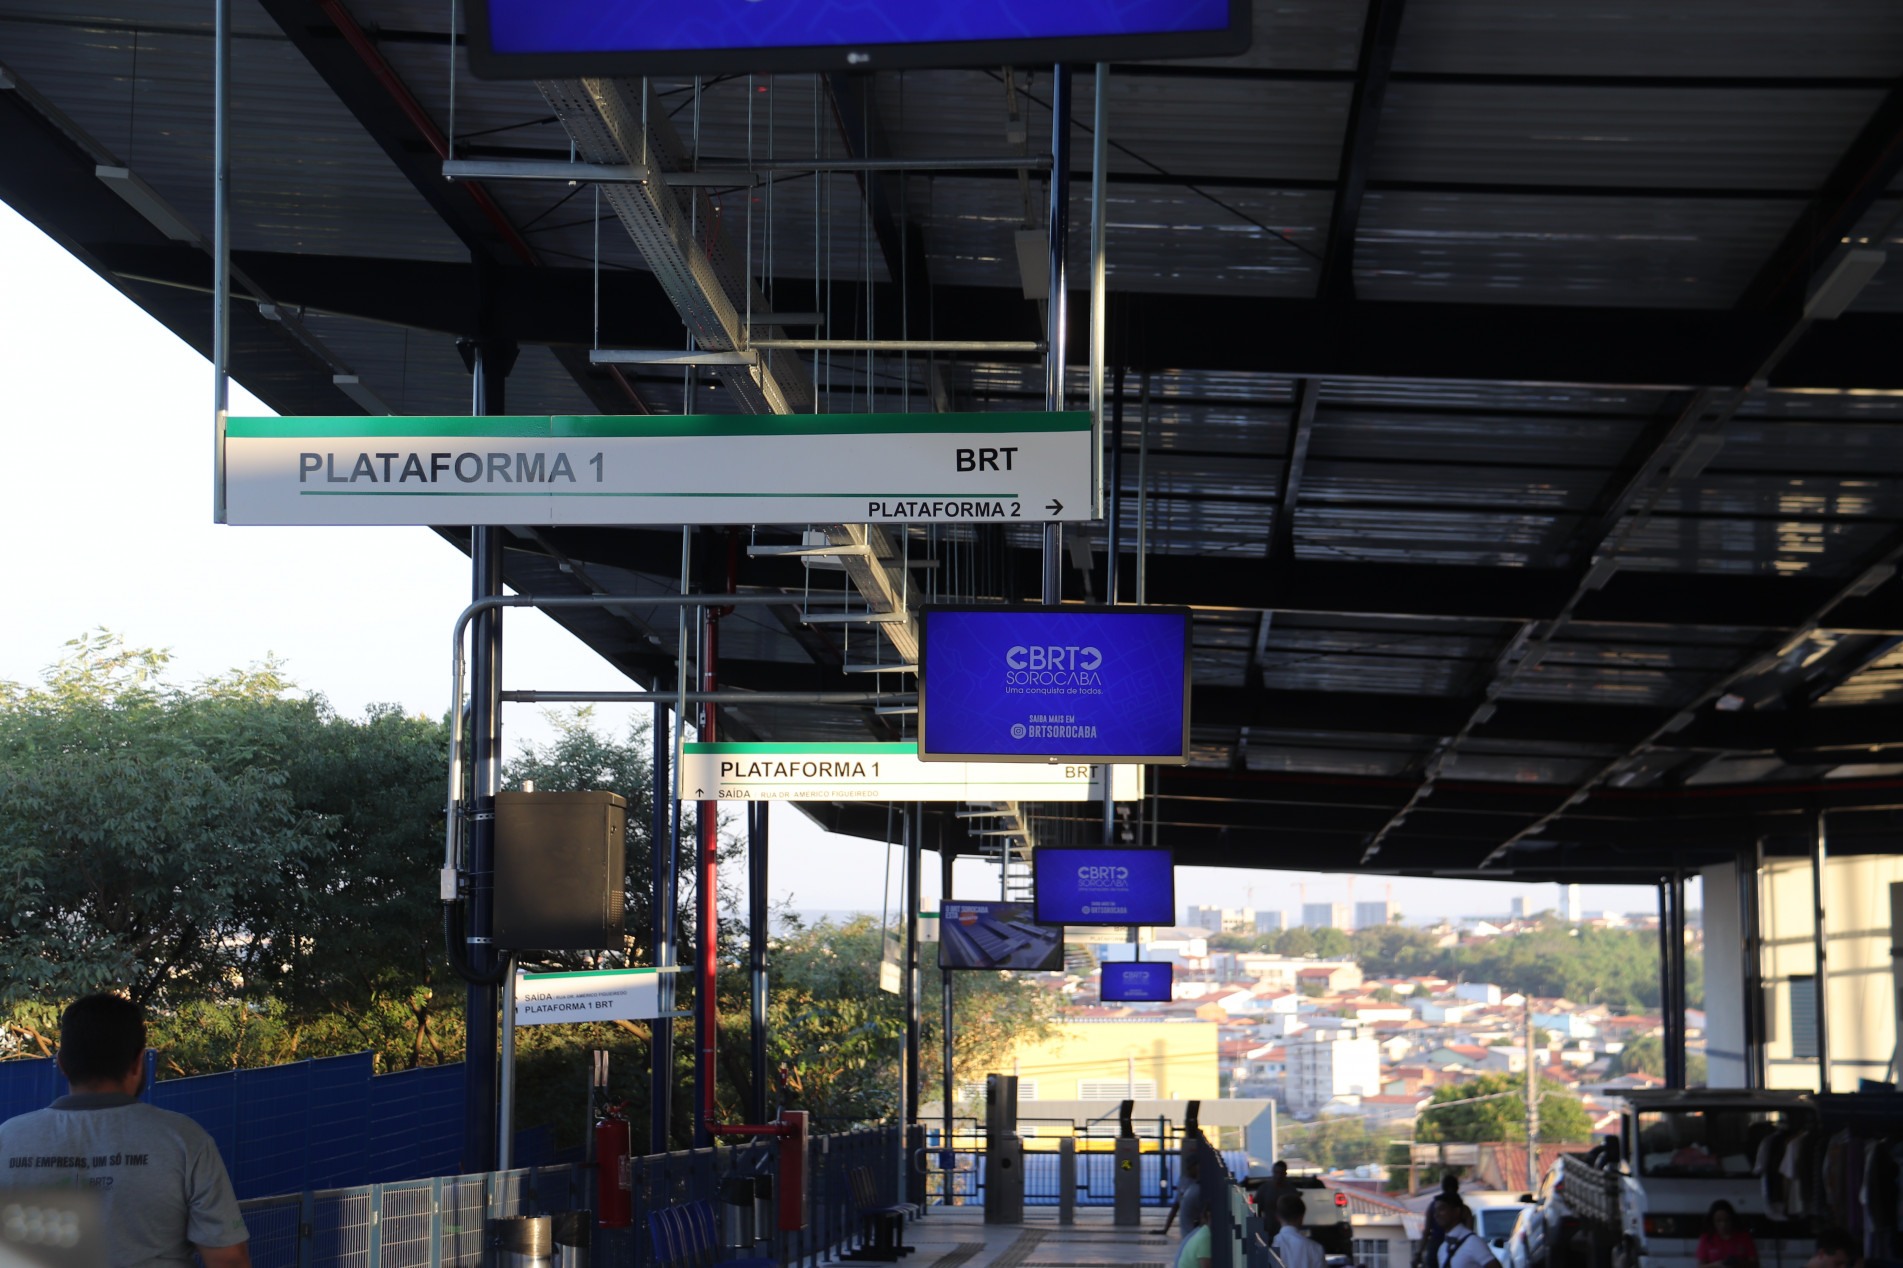 O terminal Ipiranga possui estruturas cobertas, bilheteria, banheiros, assentos, wi-fi e monitoramento 24 horas